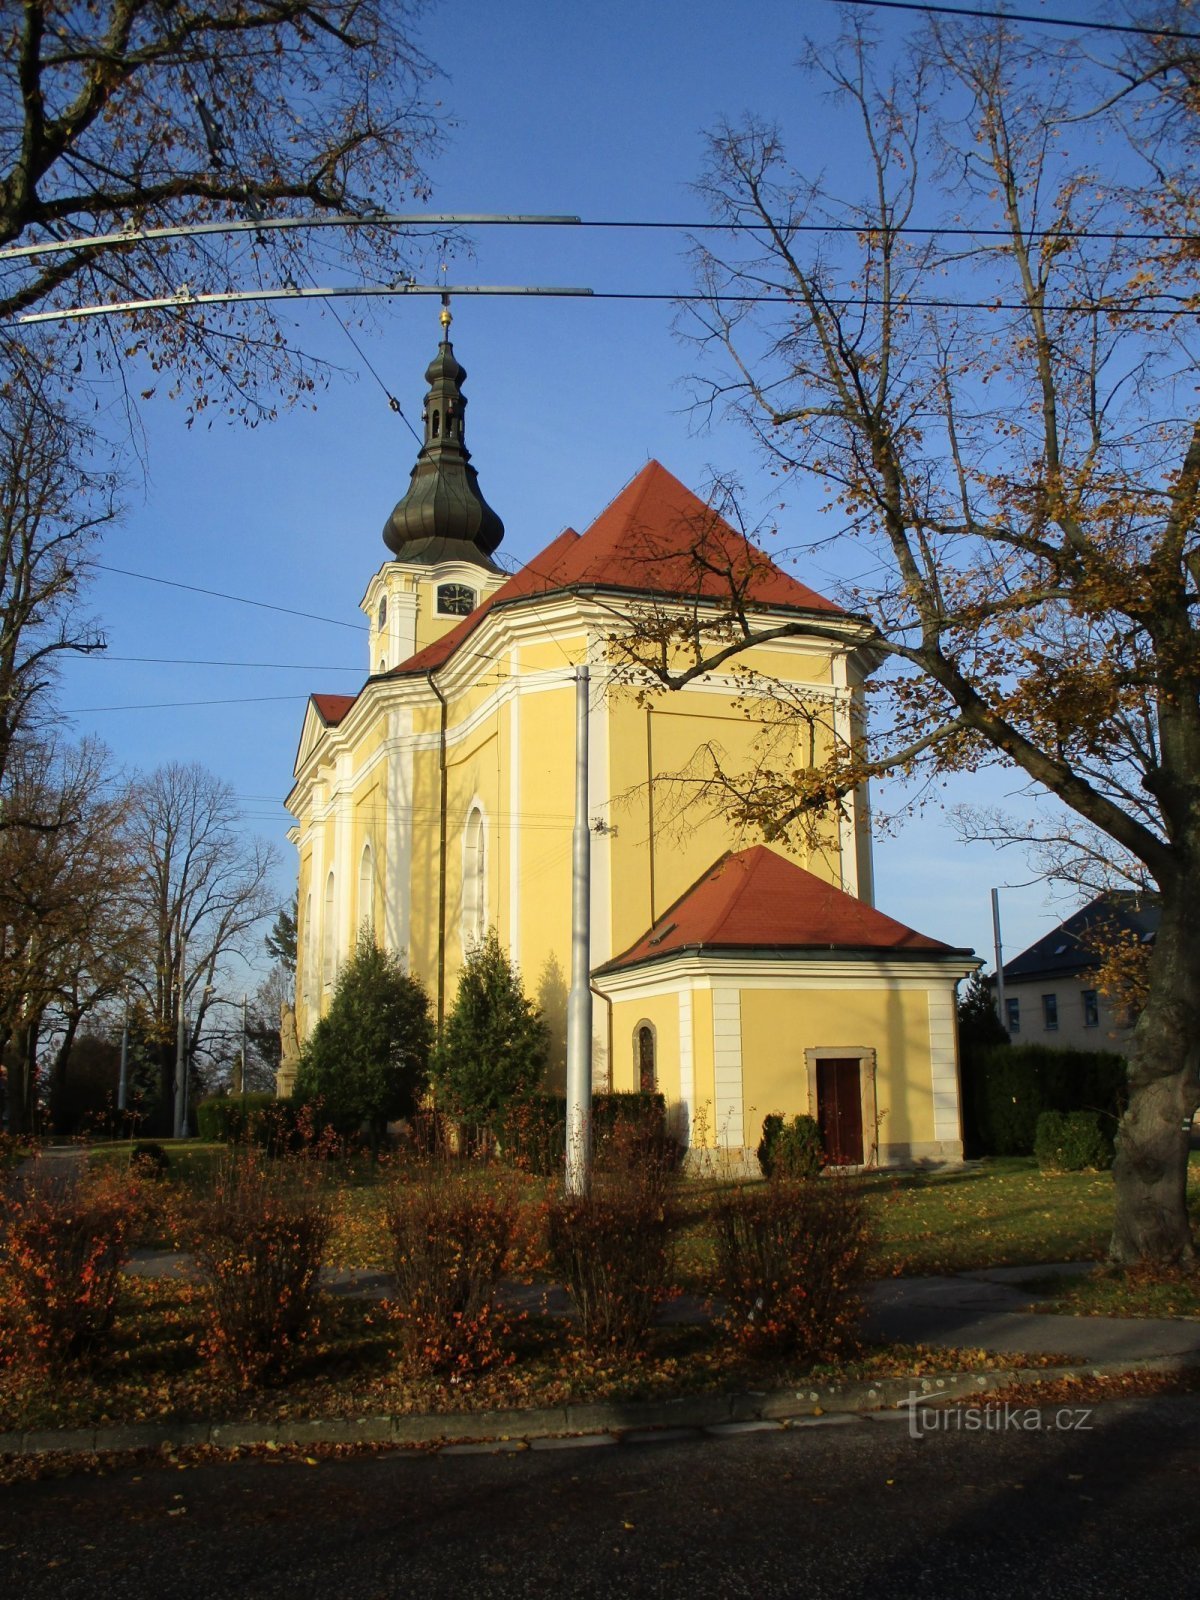 Église de St. Antonína, abbé de Nové Hradec Králové (Hradec Králové, 17.11.2019/XNUMX/XNUMX)